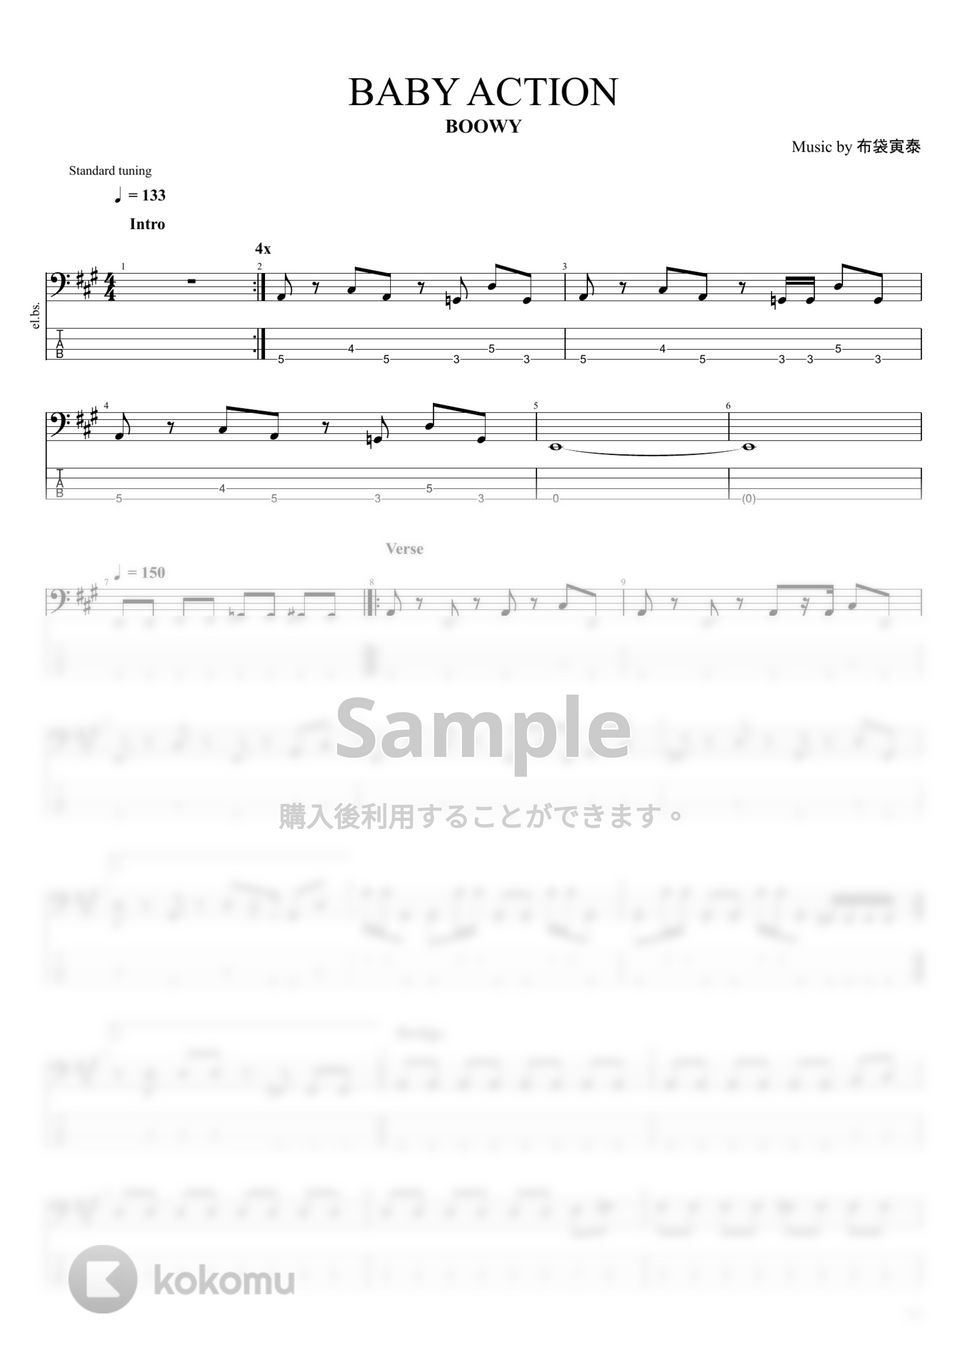 BOOWY - BOOWY楽譜集Vol.２ (15曲) タブ + 五線譜 by まっきん